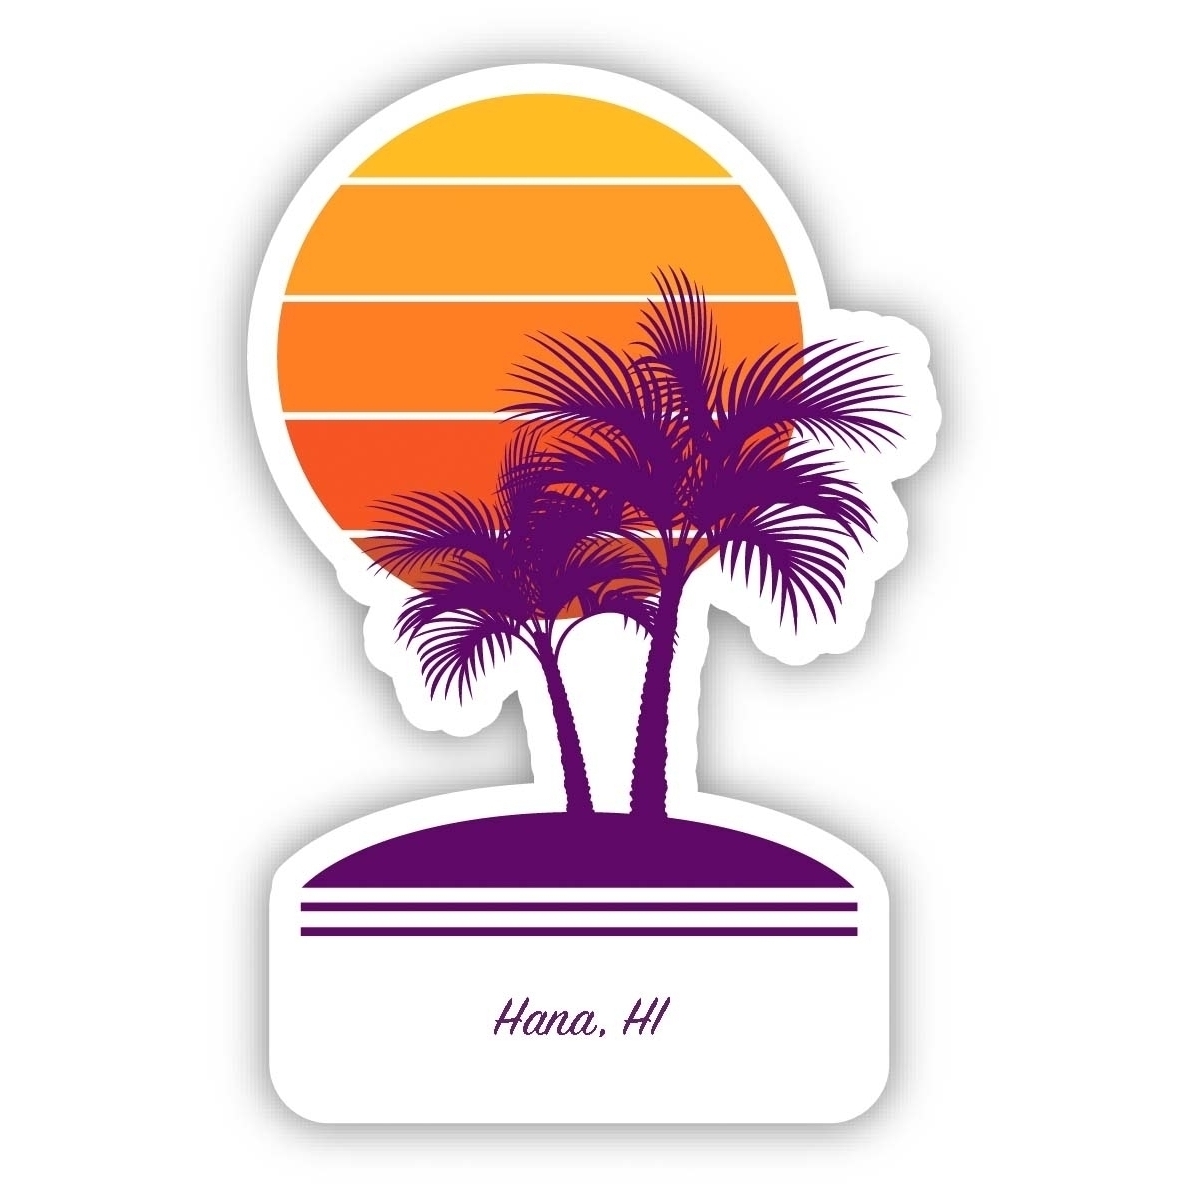 Hana Hawaii Souvenir 4 Inch Vinyl Decal Sticker Palm Design